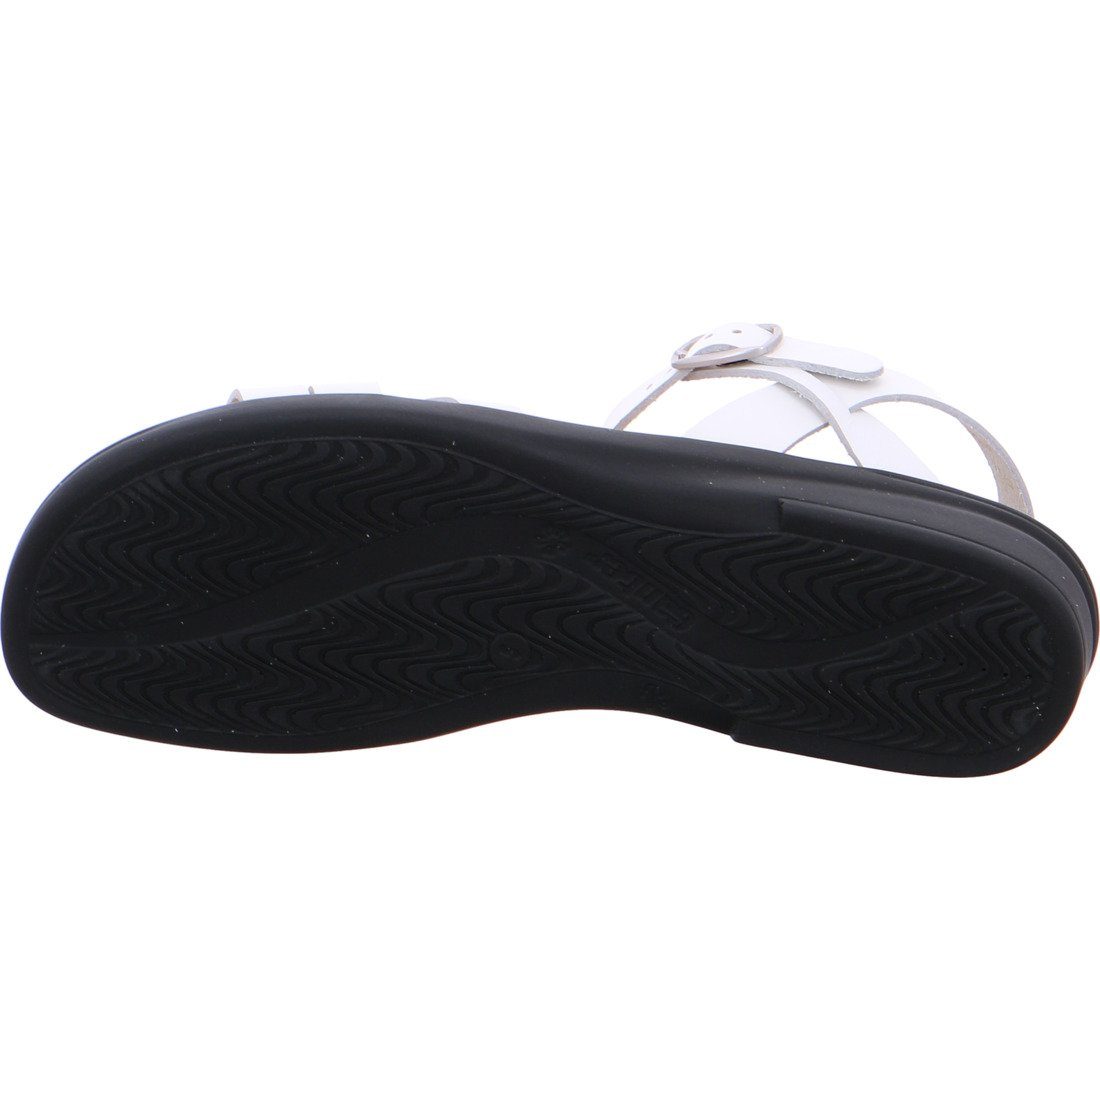 Ganter Ganter Schuhe, Sandalette Sandalette Damen 033403 weiß - Sonnica Leder